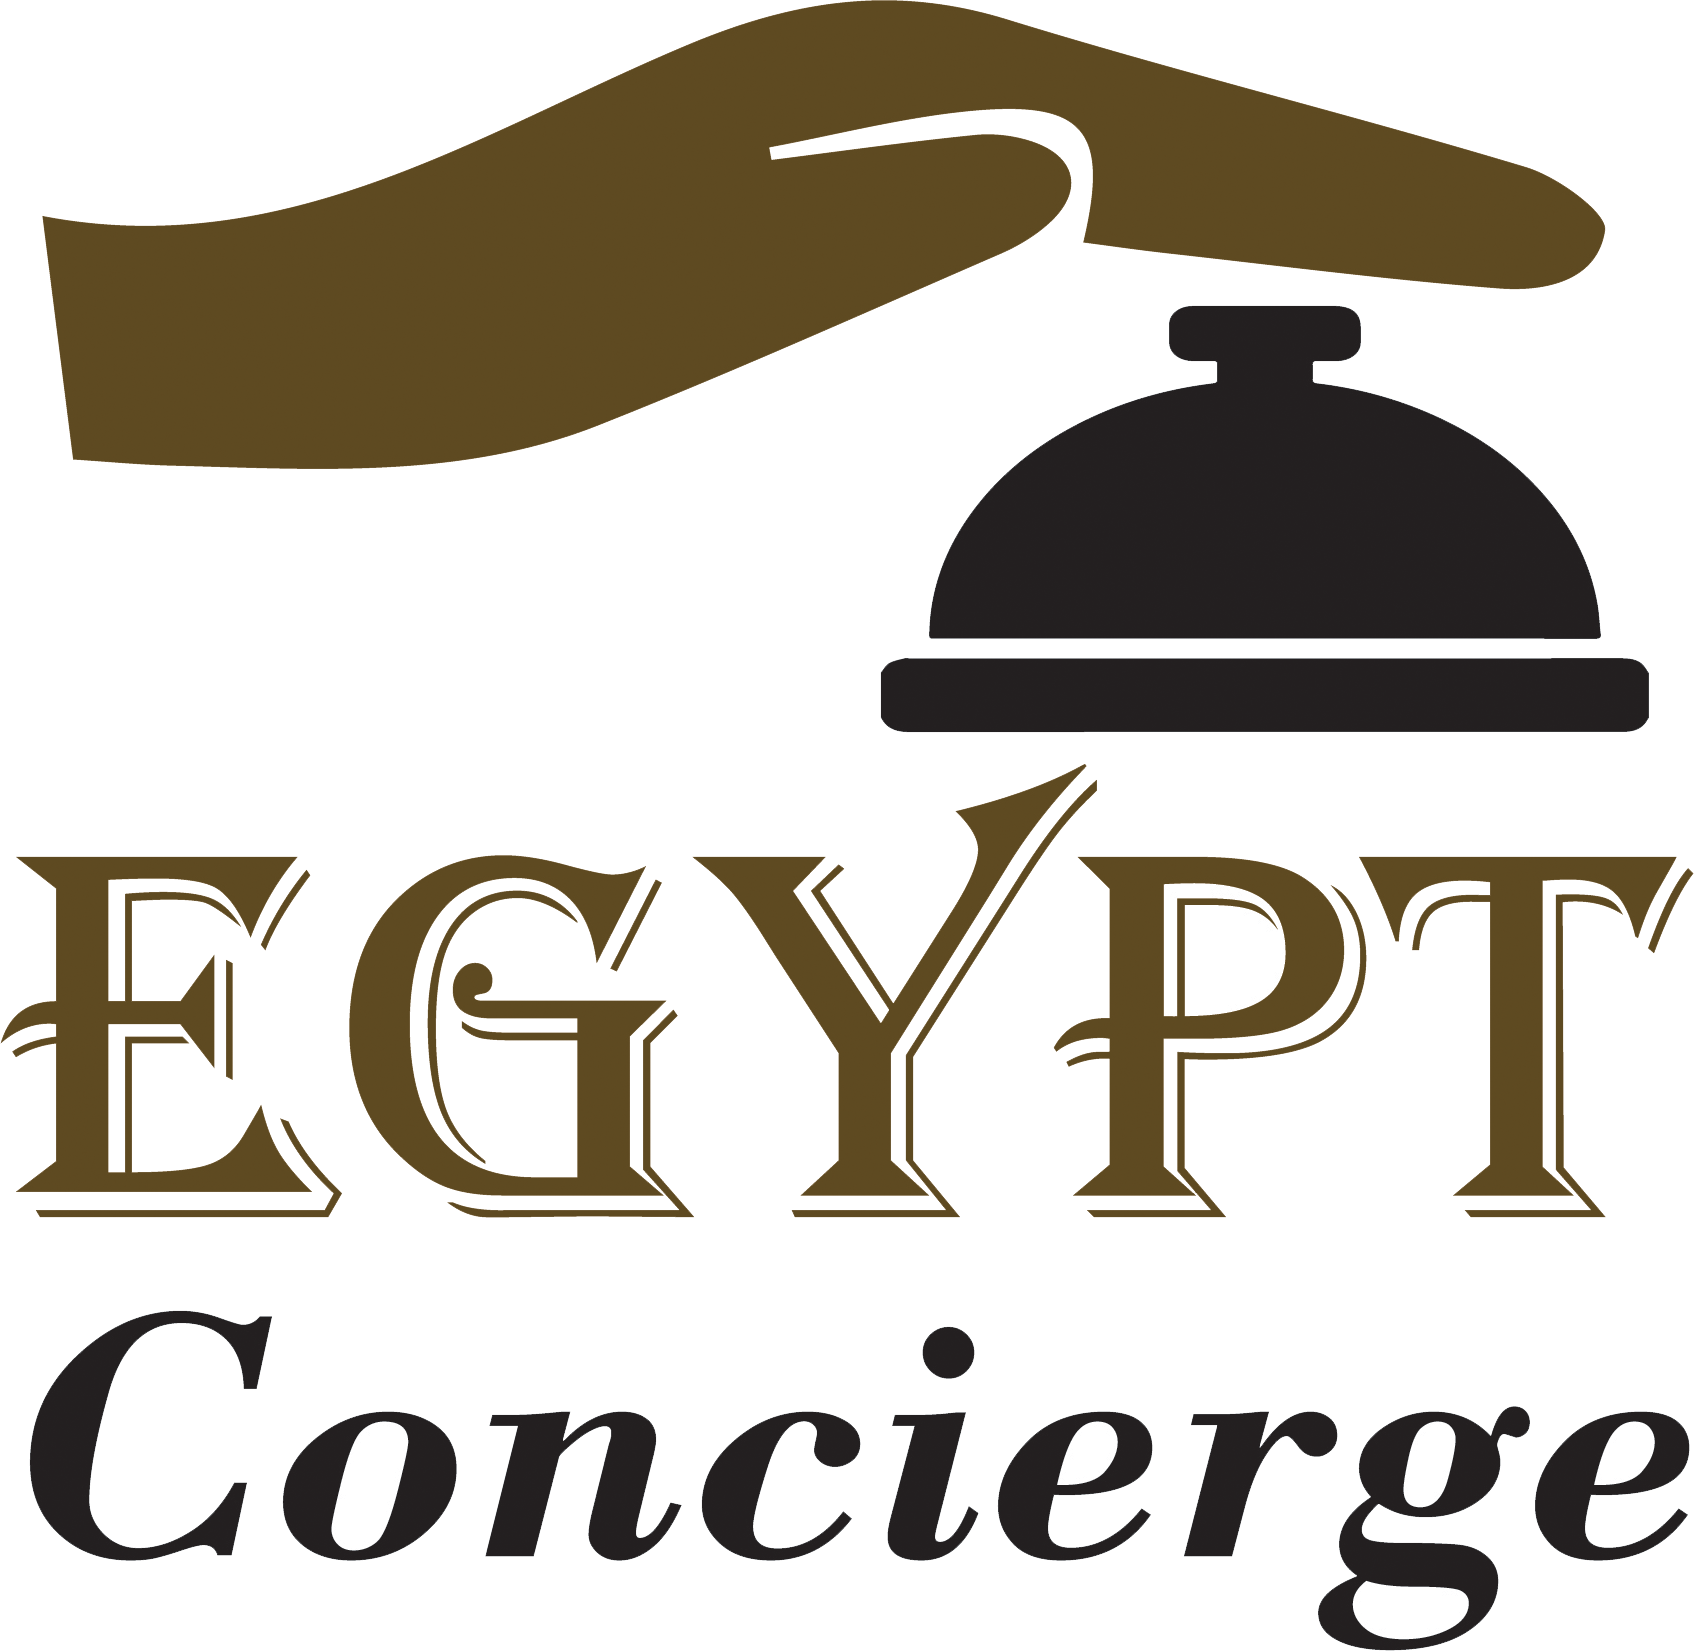 Egypt Concierge